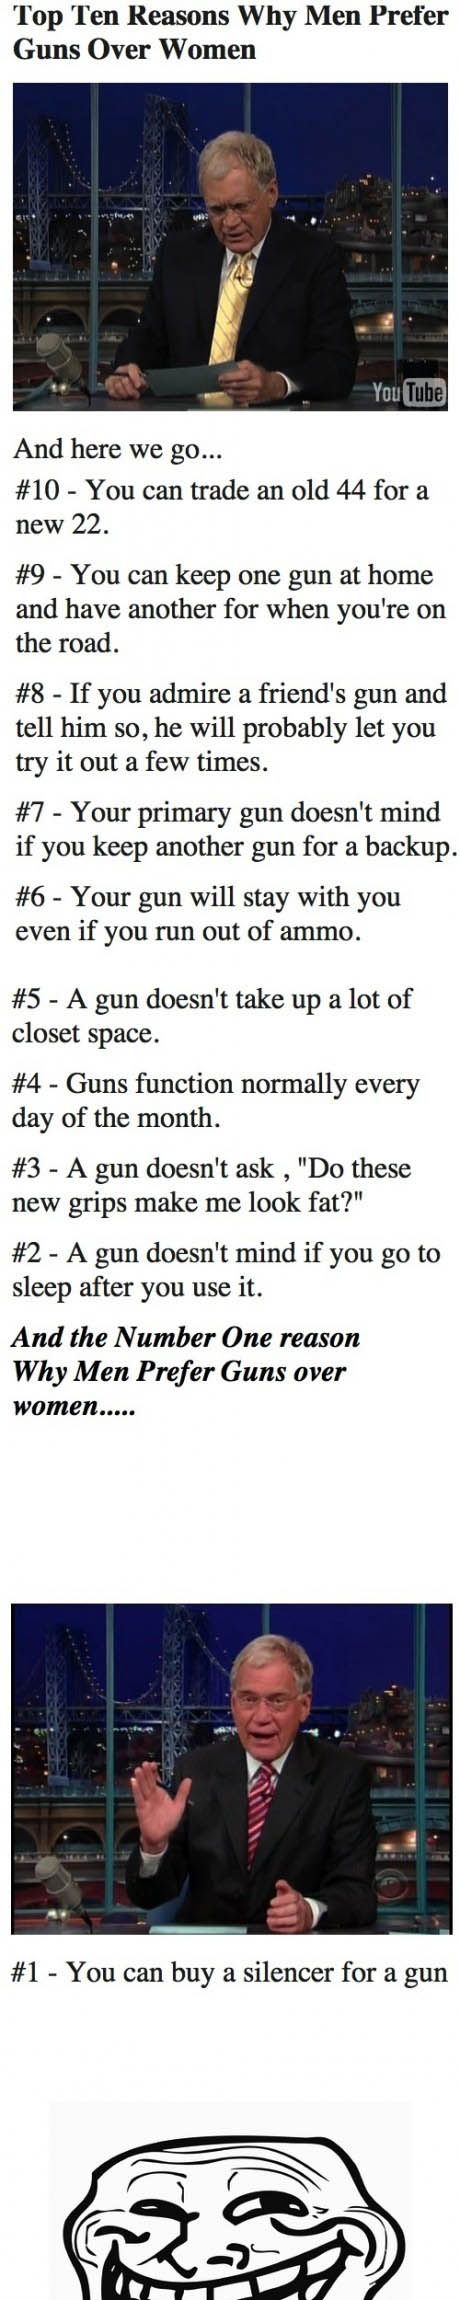 Top ten reasons why men prefer guns to women.